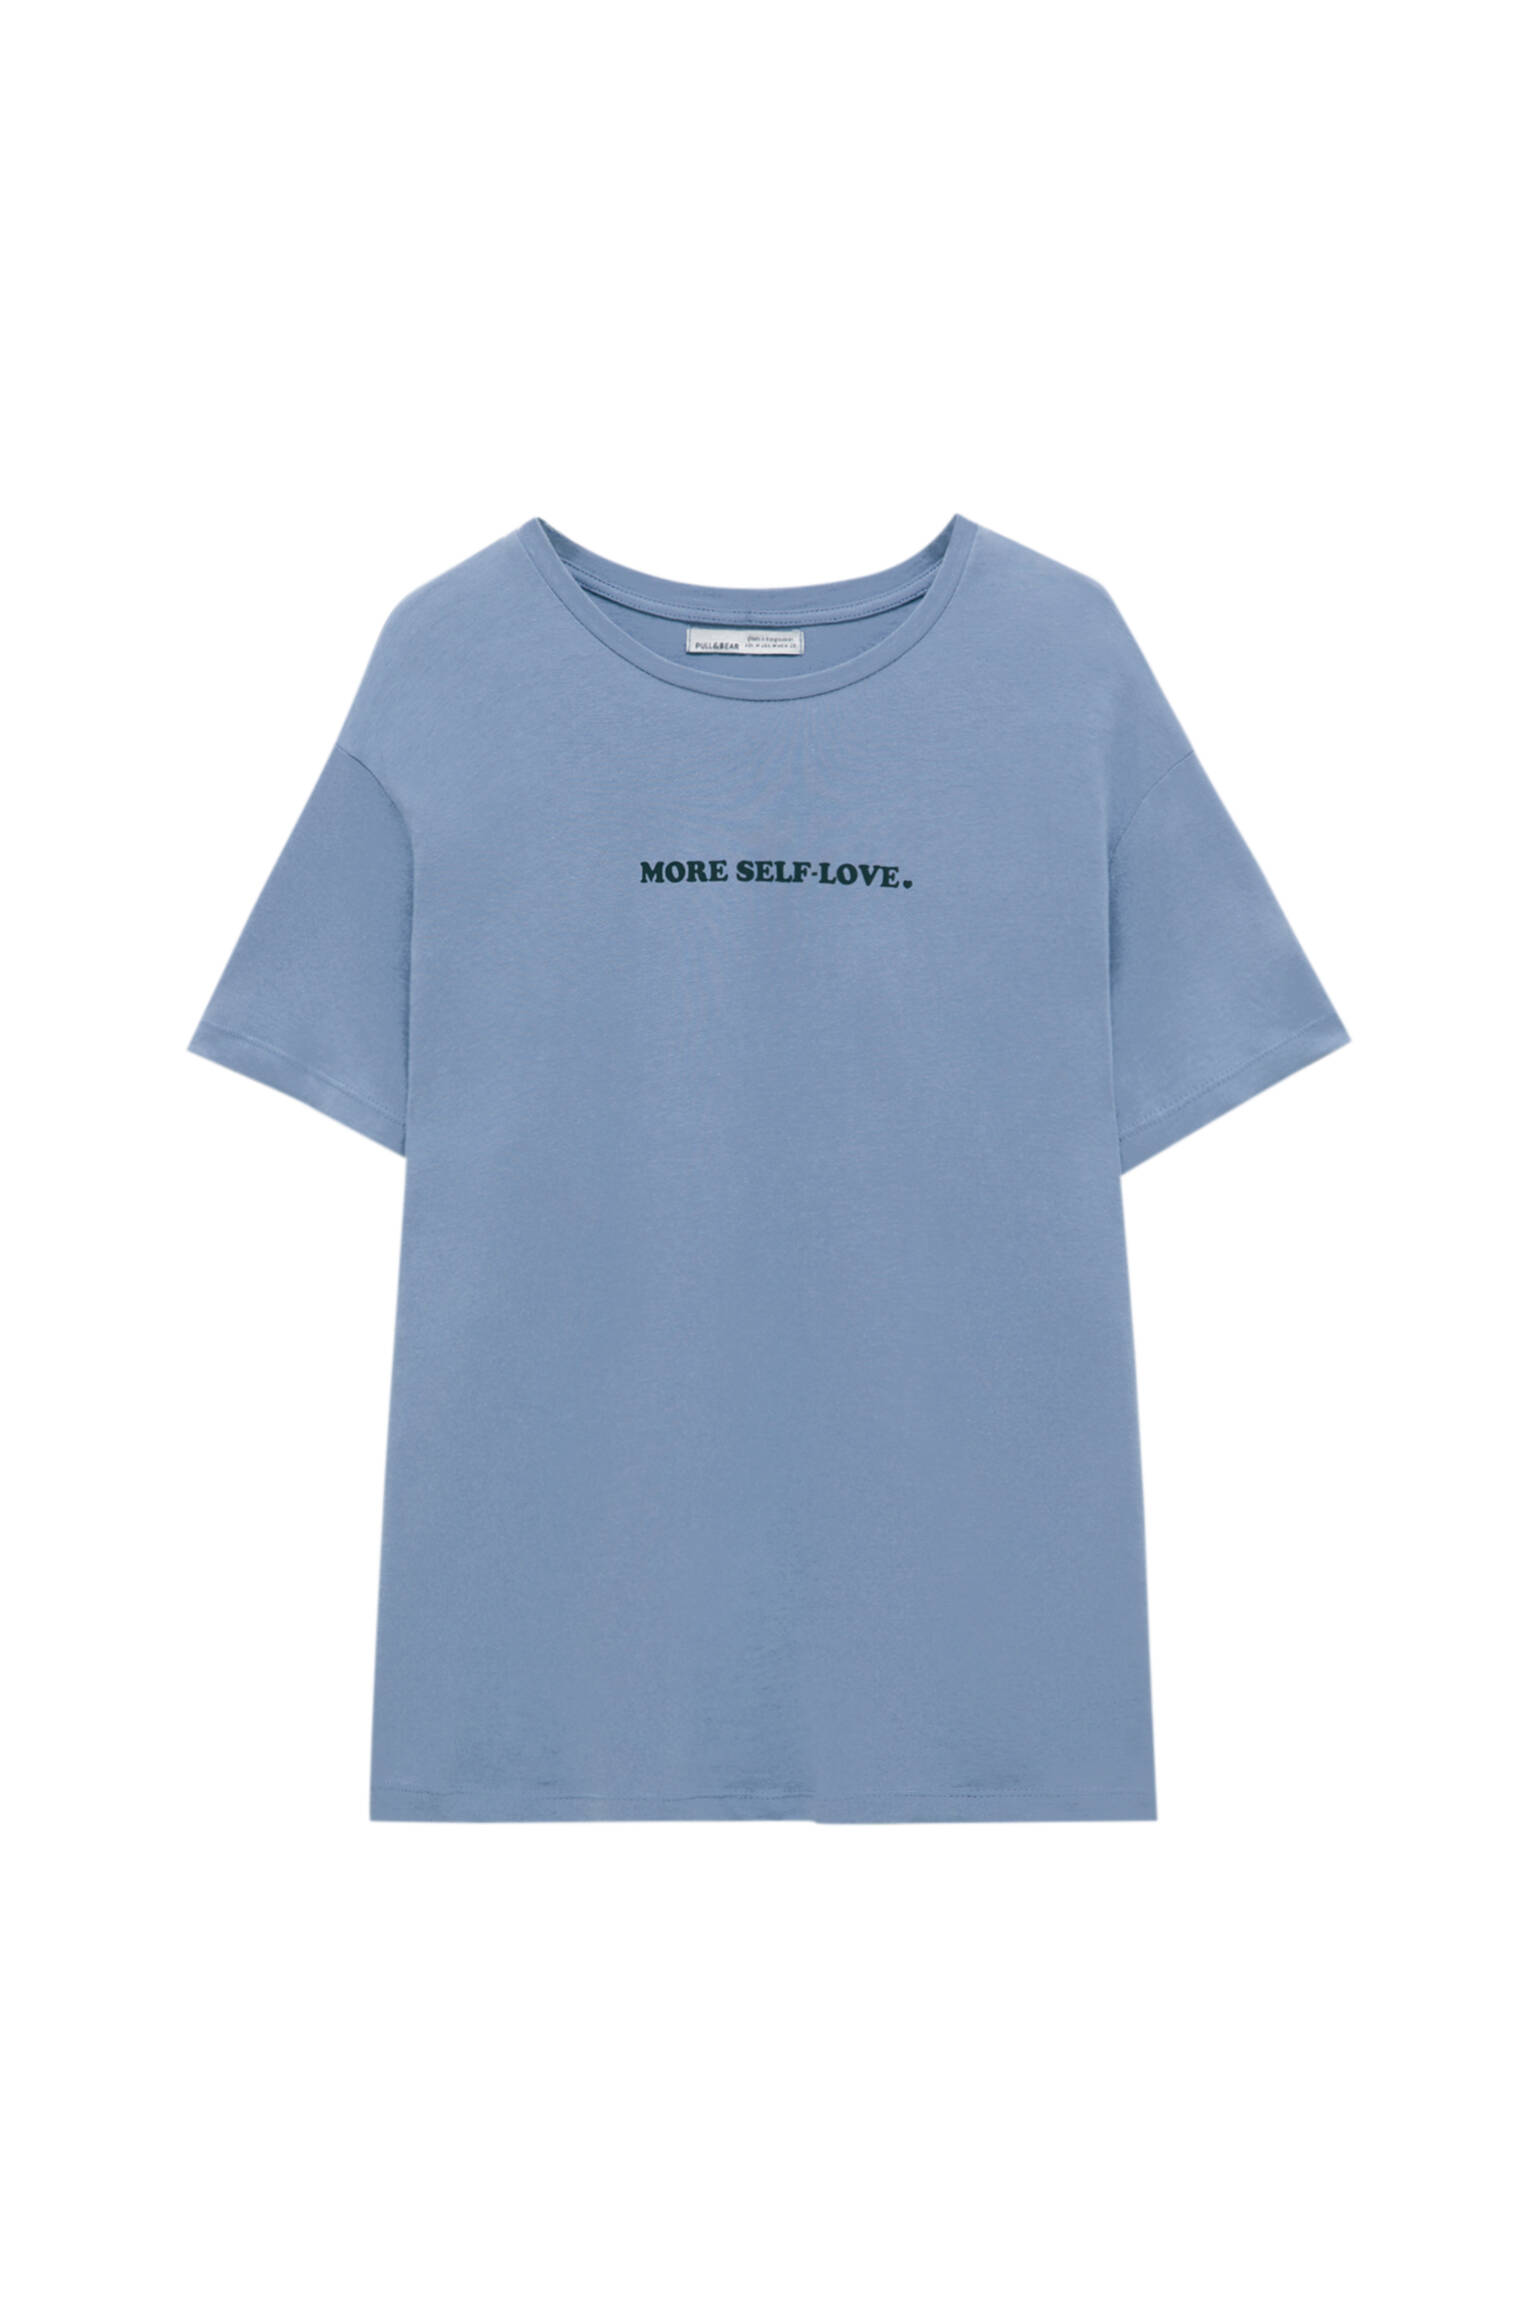 Pull&bear Femme T-shirt Basique 100 % Coton à Col Rond Et Manches Courtes Avec Inscription Sur La Poitrine. Bleu Gris L